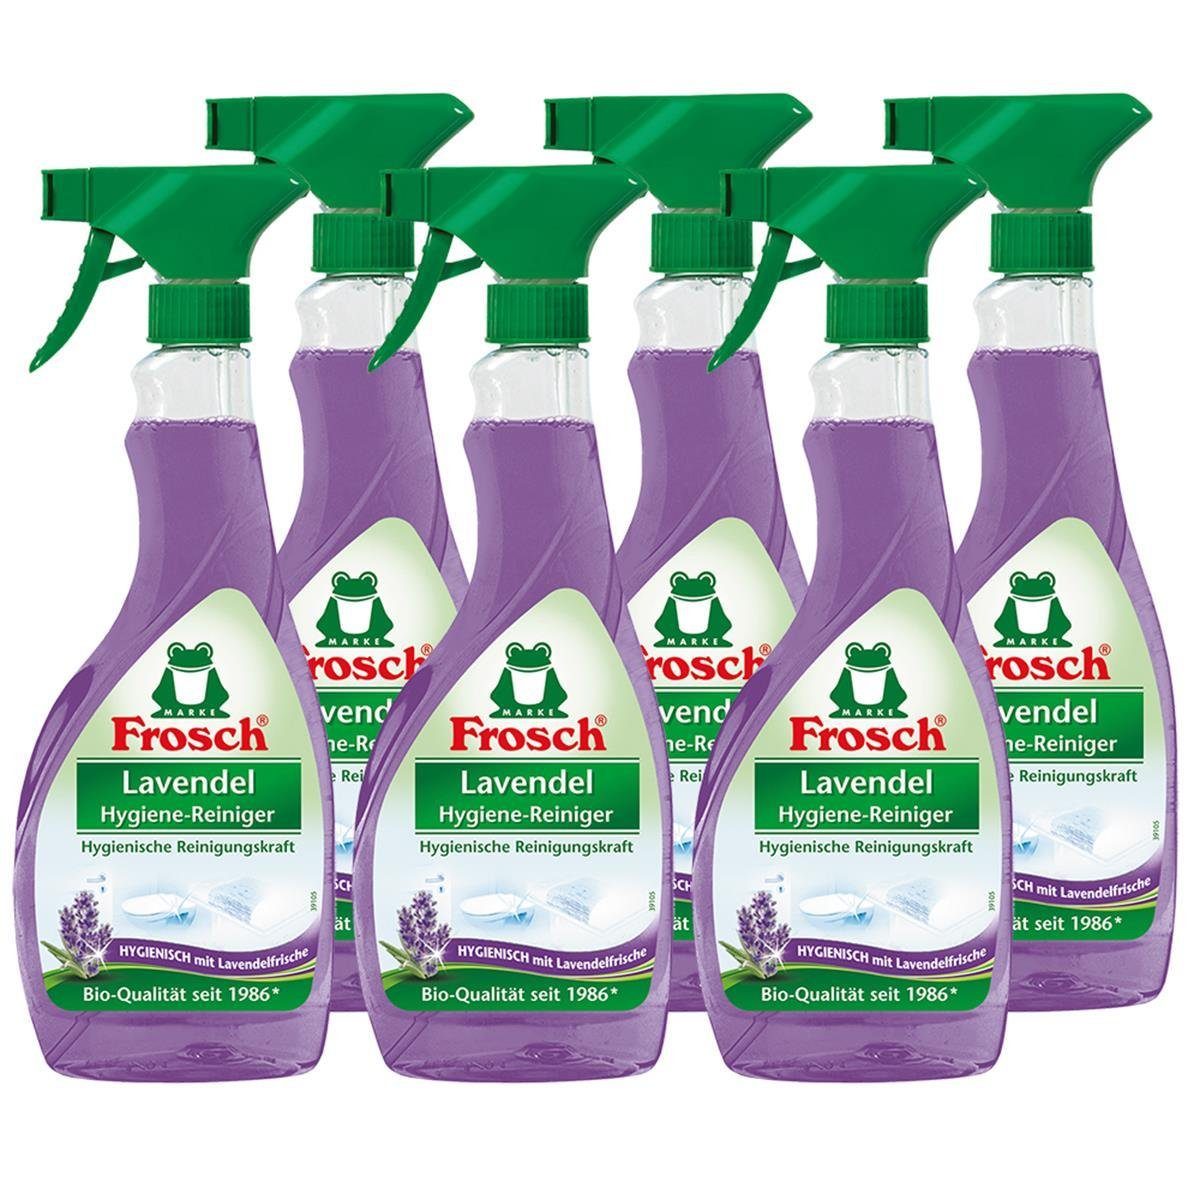 FROSCH 6x Frosch Lavendel Hygiene-Reiniger 500 ml Sprühflasche Spezialwaschmittel